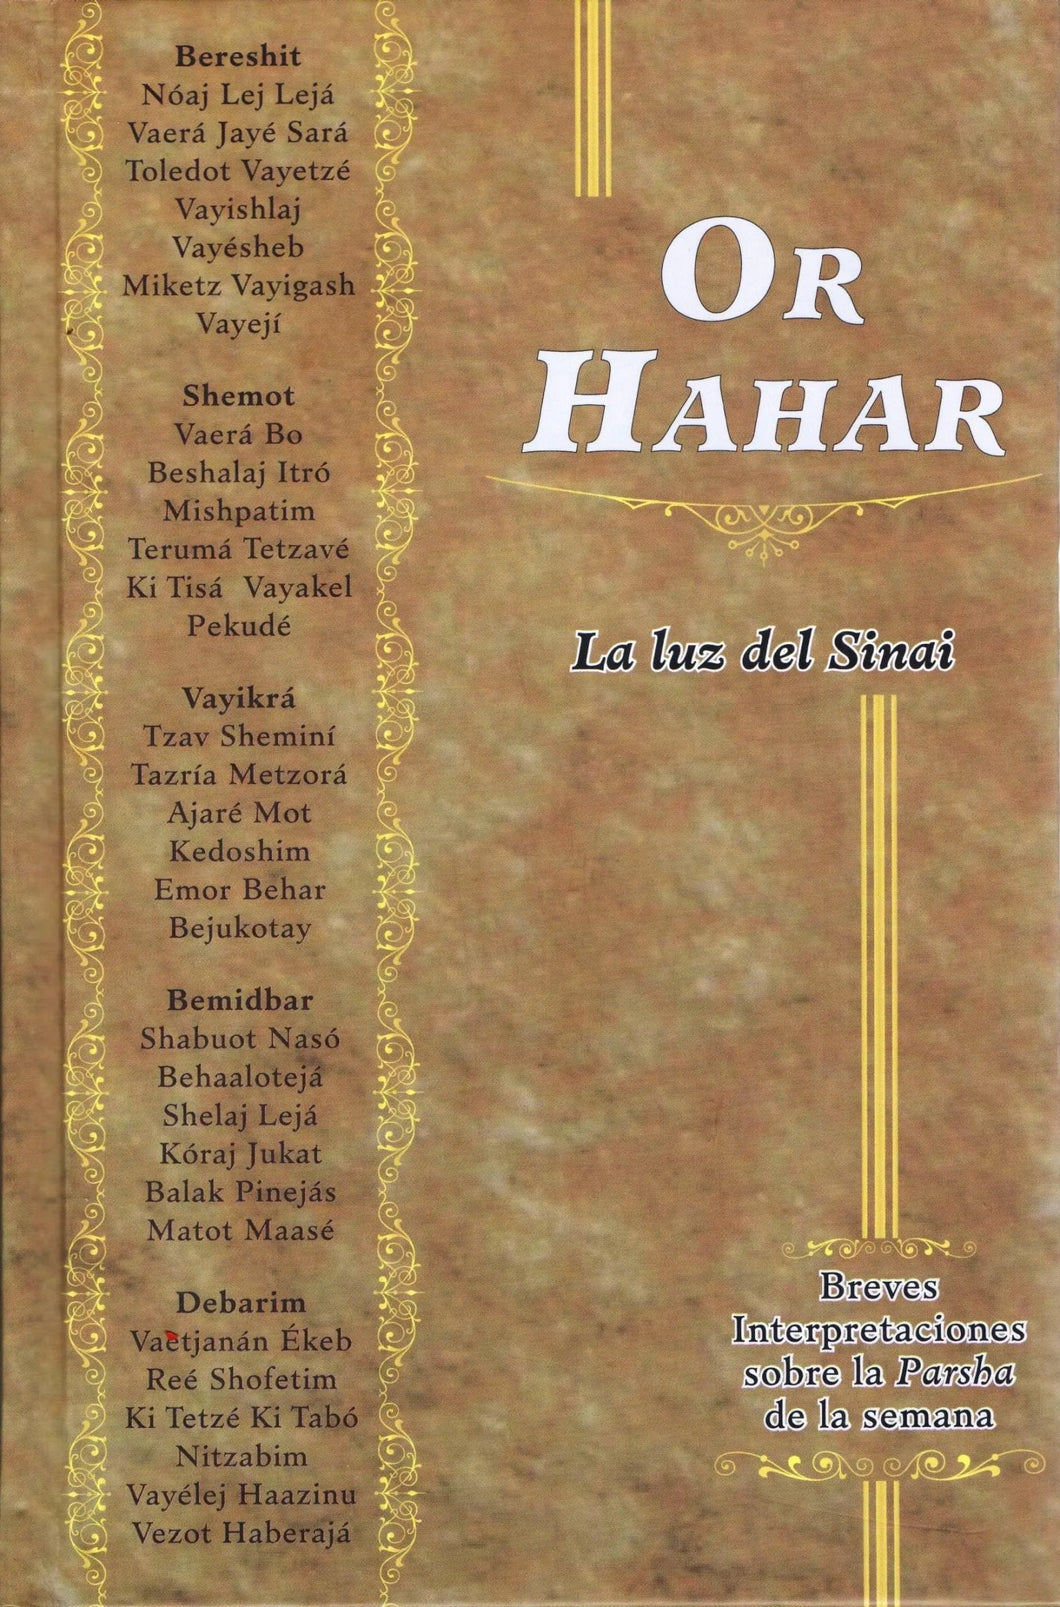 OR HAHAR-LA LUZ DEL SINAI-INTERPRETACIONES DE LA PARASHA